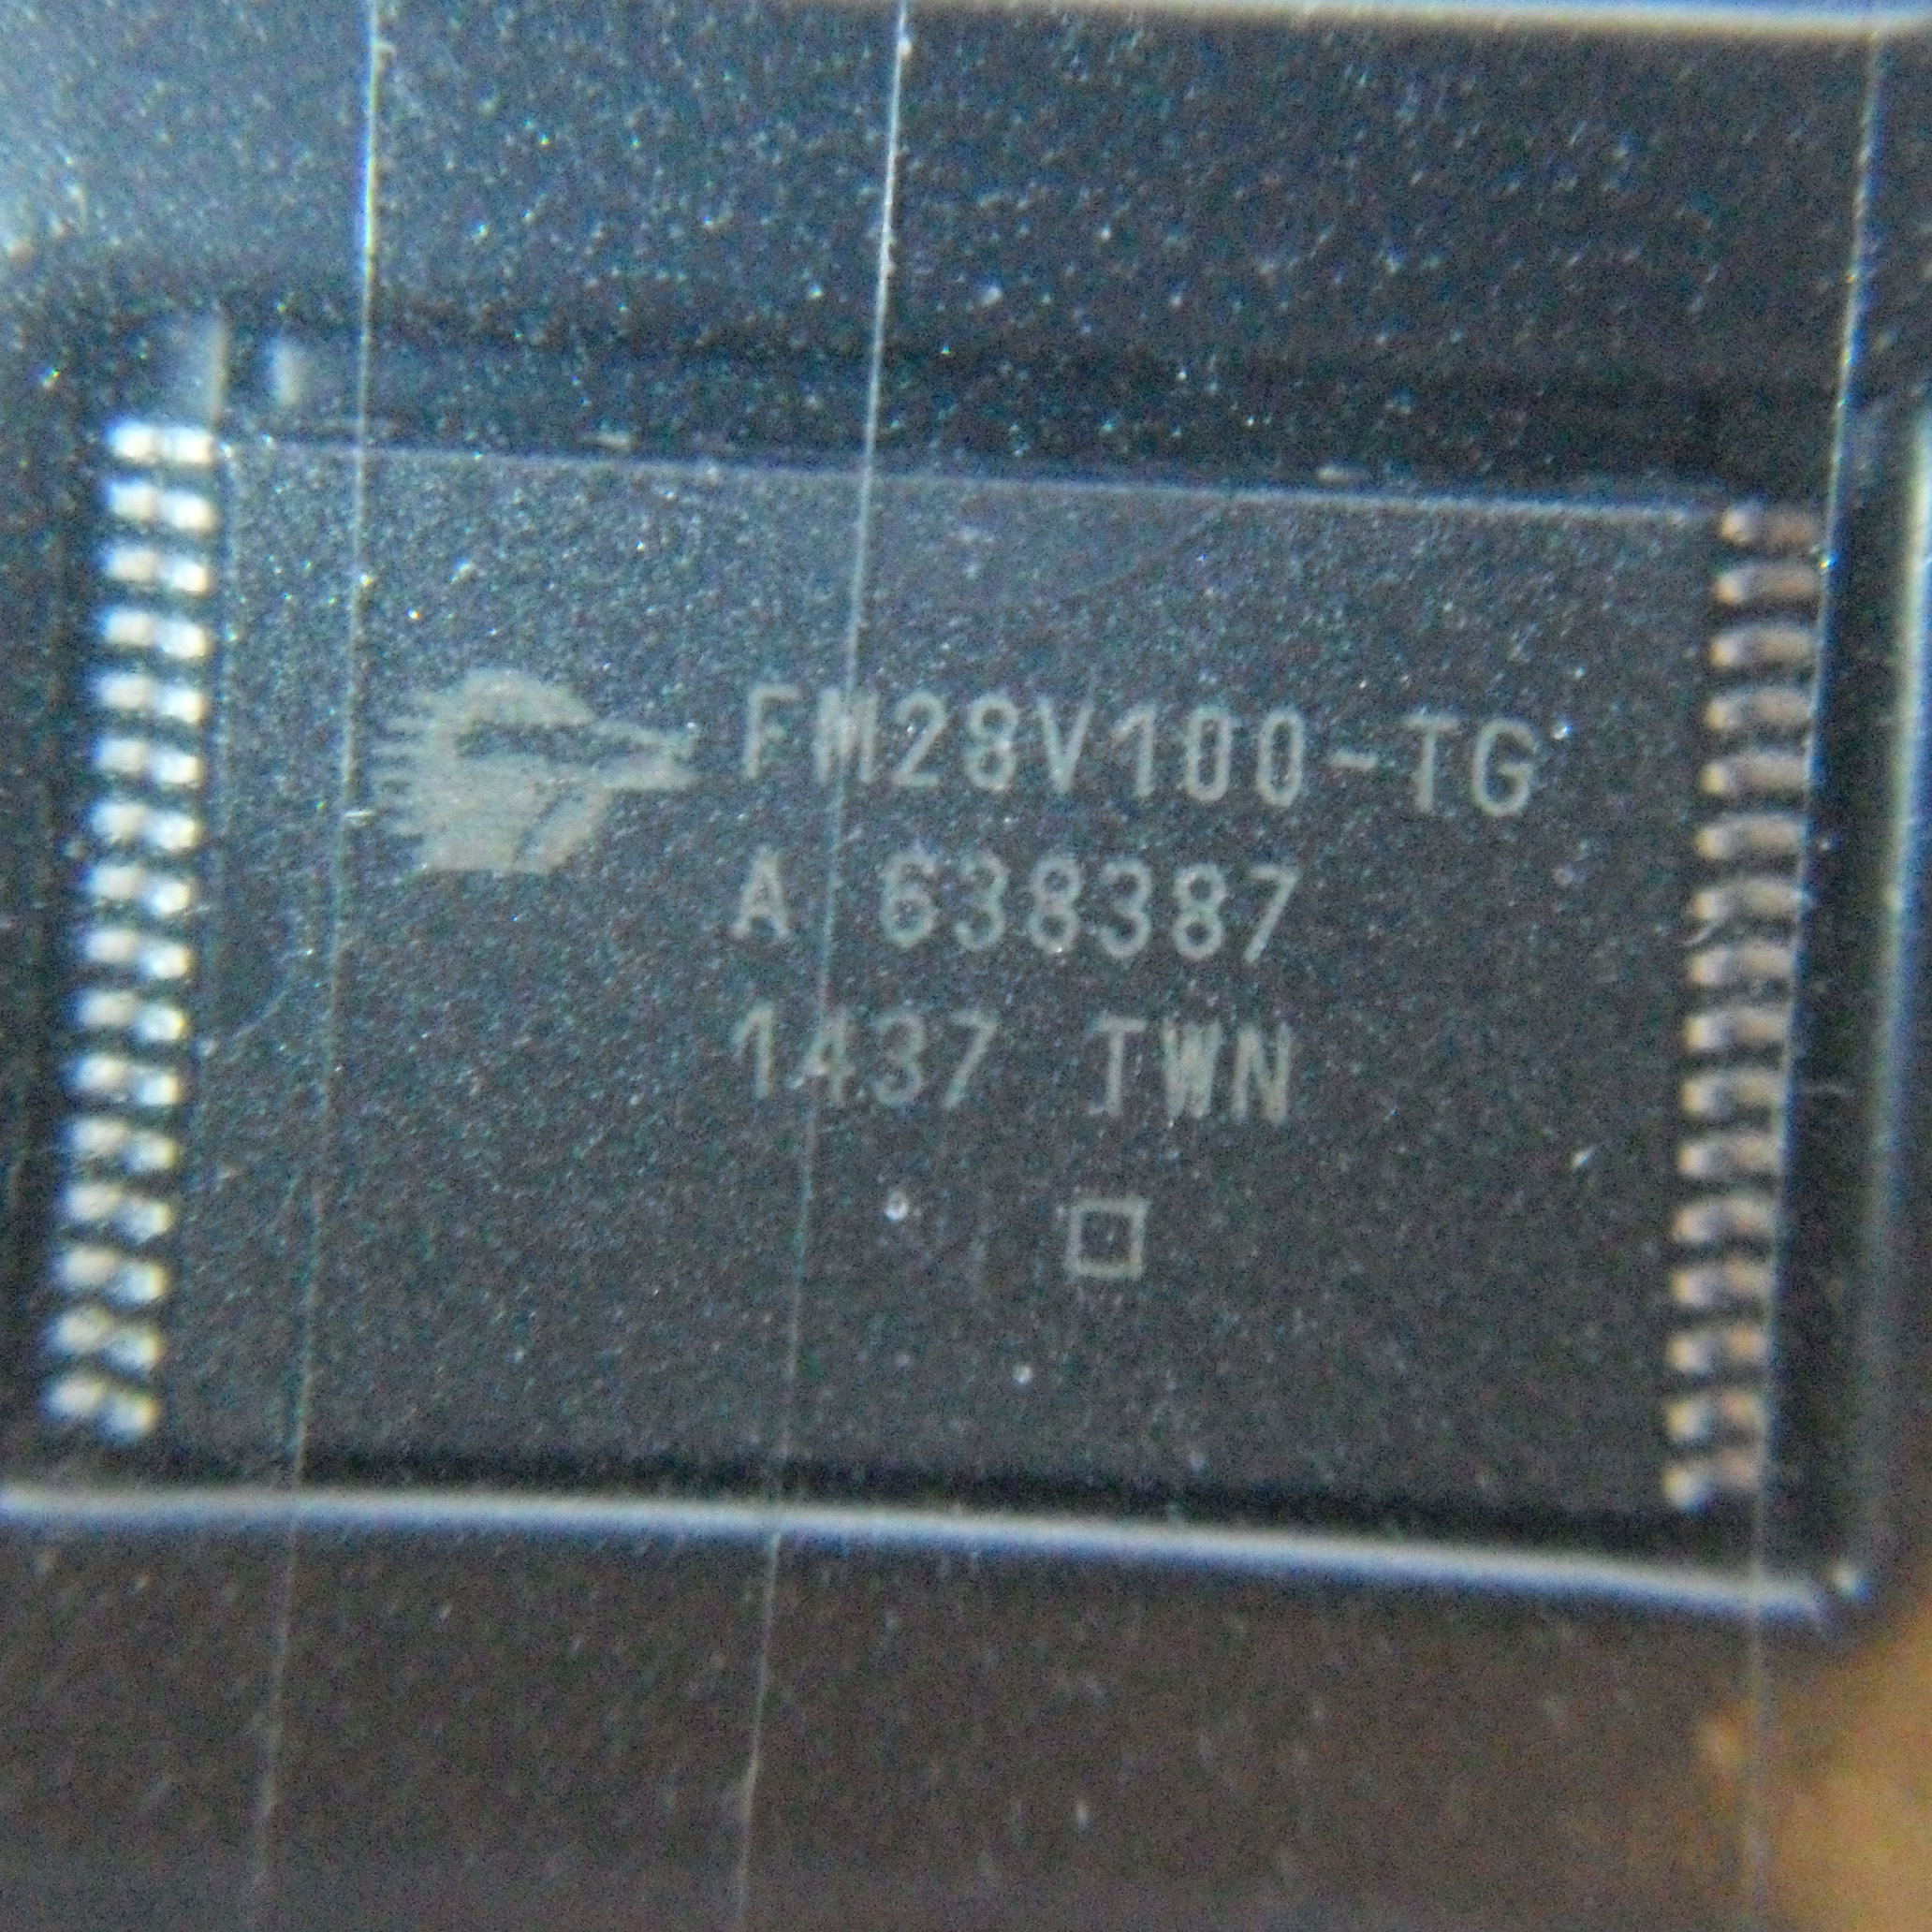 FM28V100-TG-Cypress